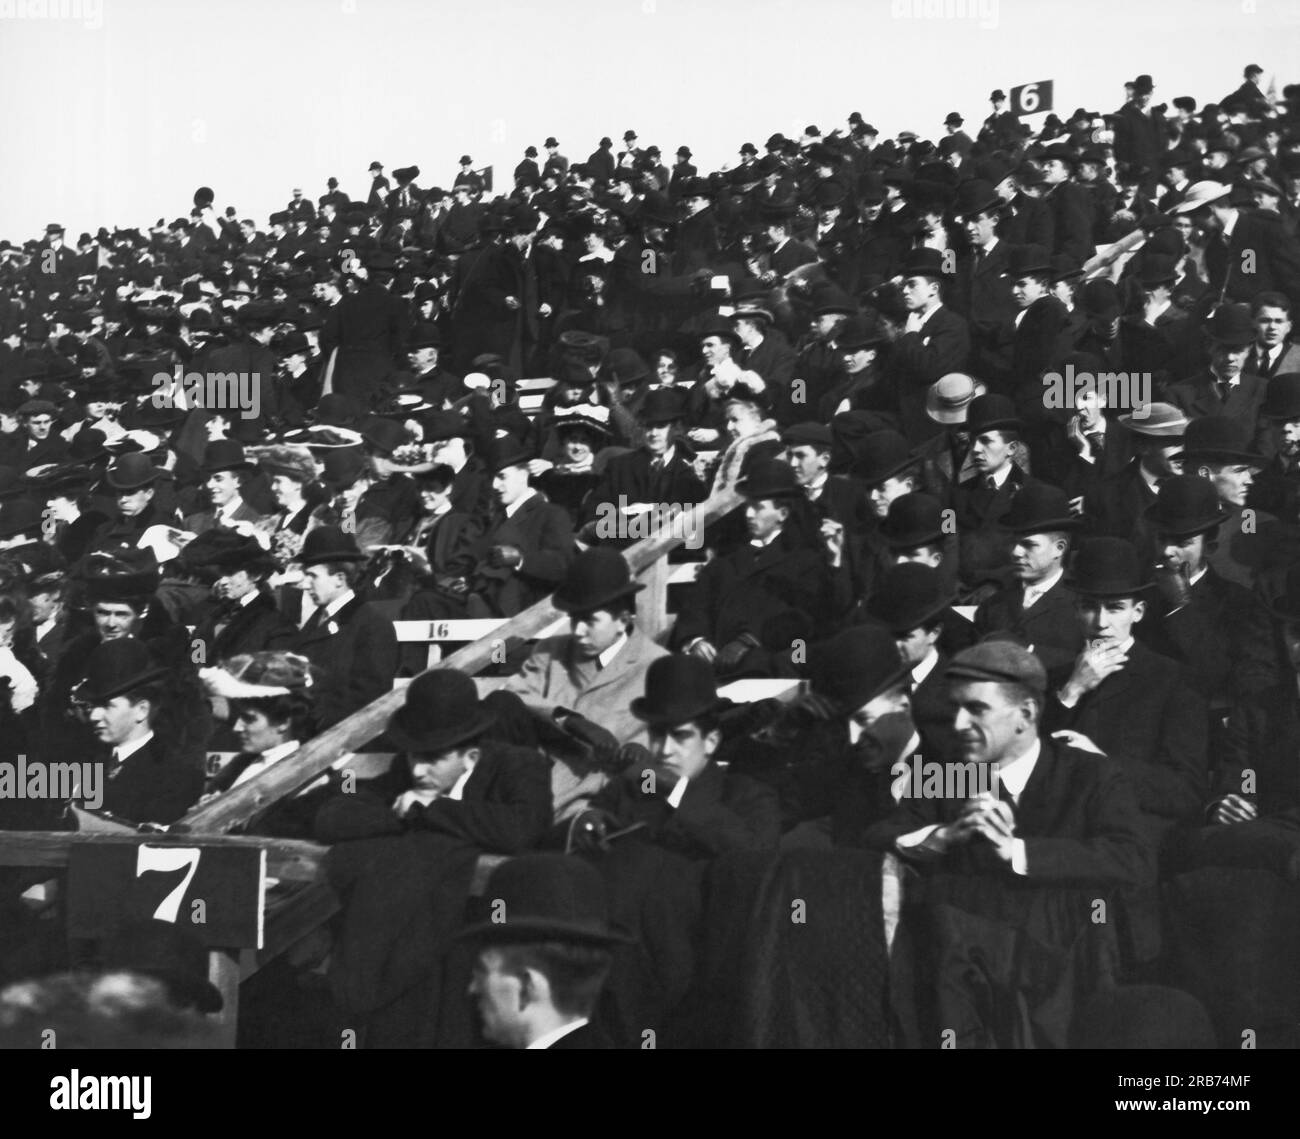 Boston, Massachusetts:  1905 Football fans attending the Harvard-Yale game at Harvard Stadium in Allston. Stock Photo